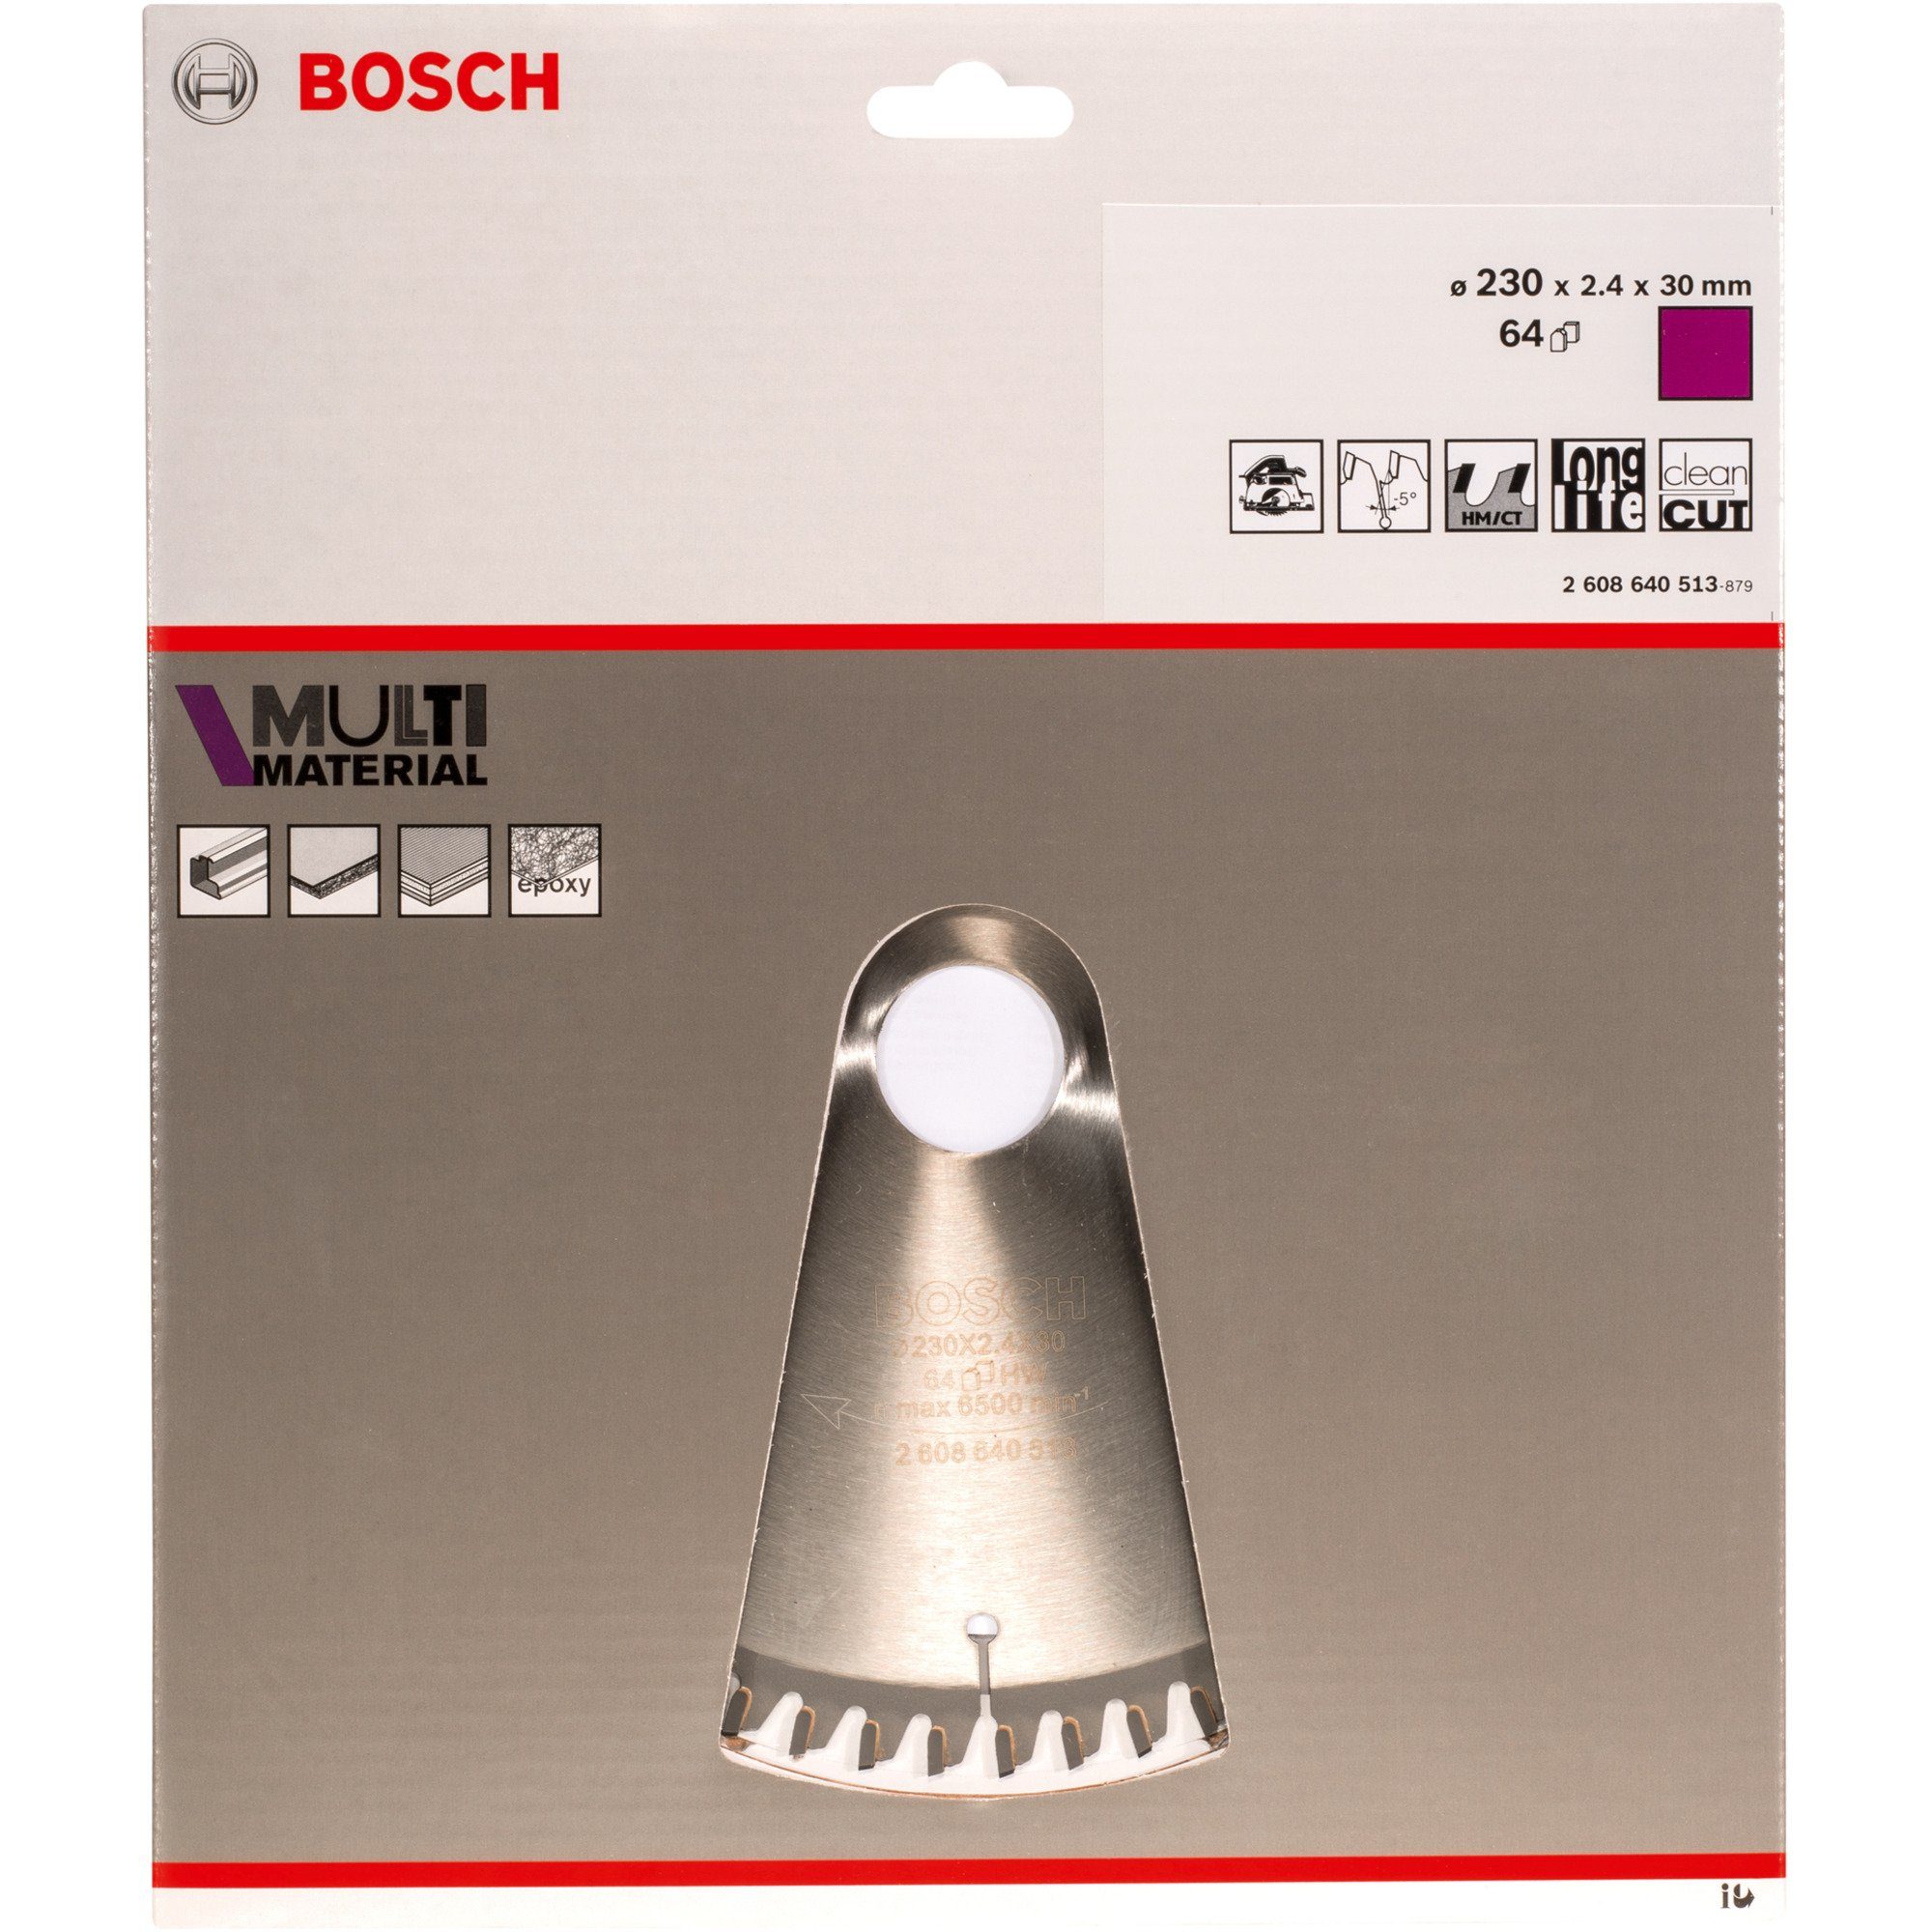 BOSCH Sägeblatt Bosch Professional Kreissägeblatt Multi Material